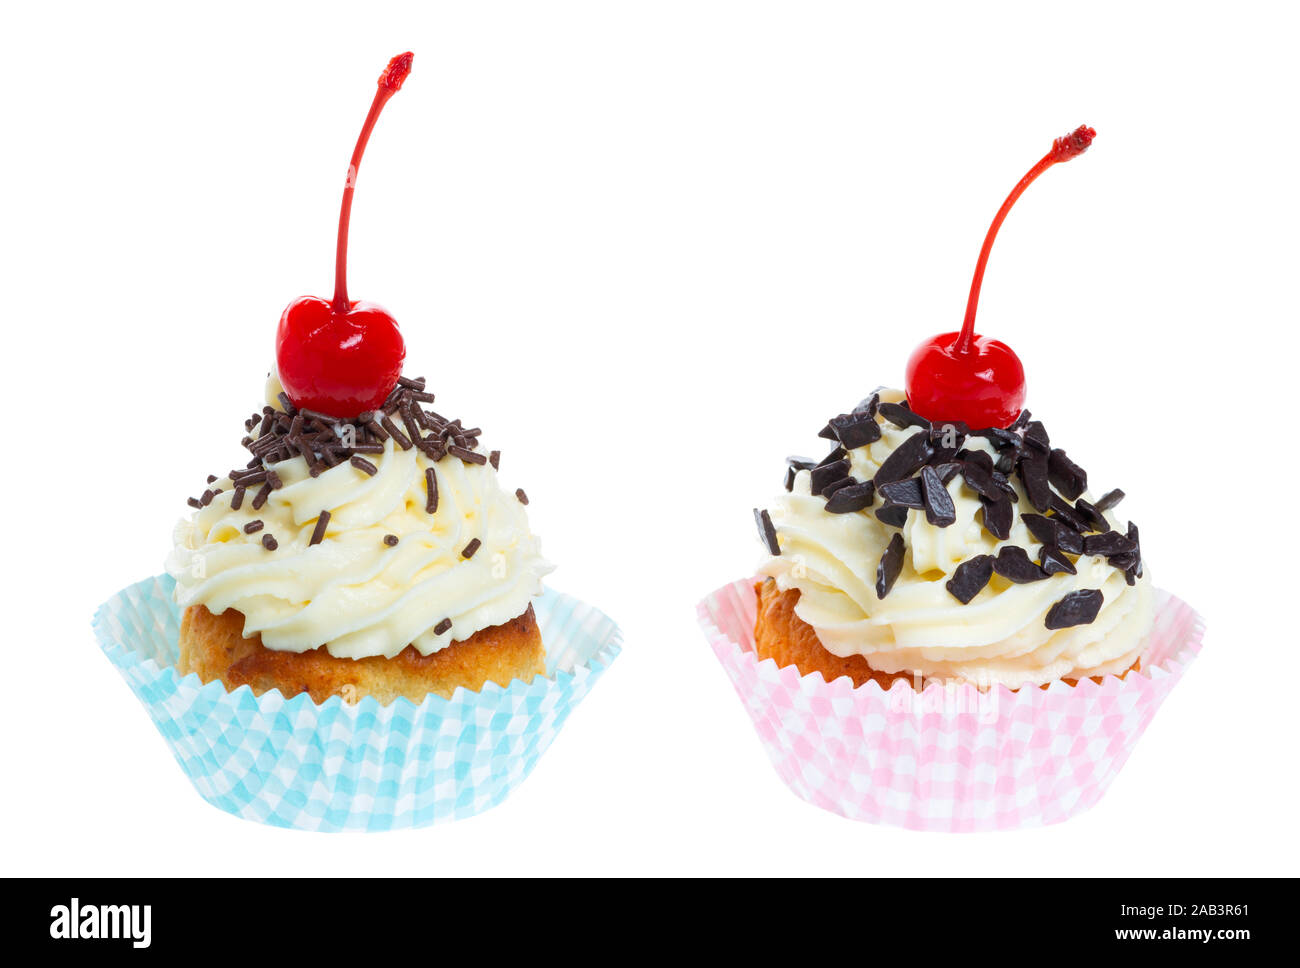 Zwei kleine Kuchen mit Schlagsahne Schokolade besprüht und maraschino Kirsche auf weißem Hintergrund Stockfoto